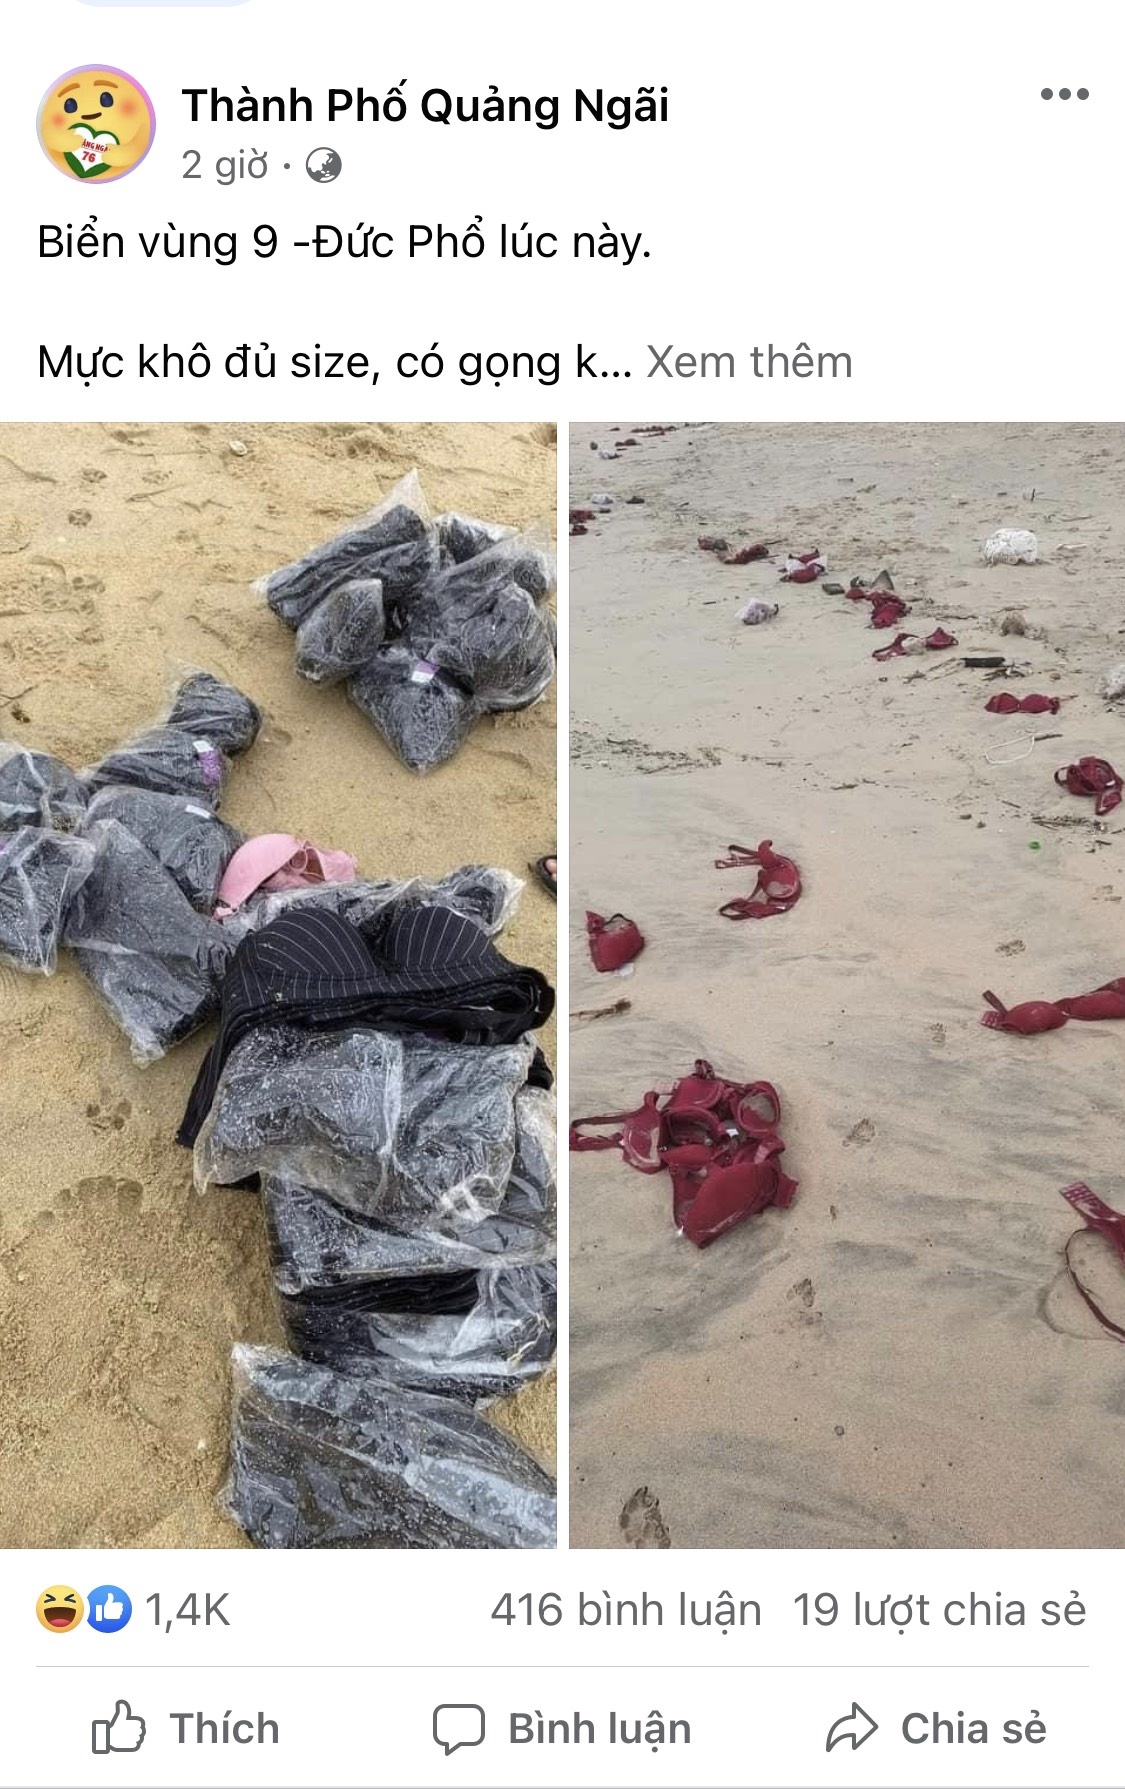 Hàng trăm chiếc áo ngực không rõ nguồn gốc trôi dạt vào bờ biển Quảng Ngãi - ảnh 2